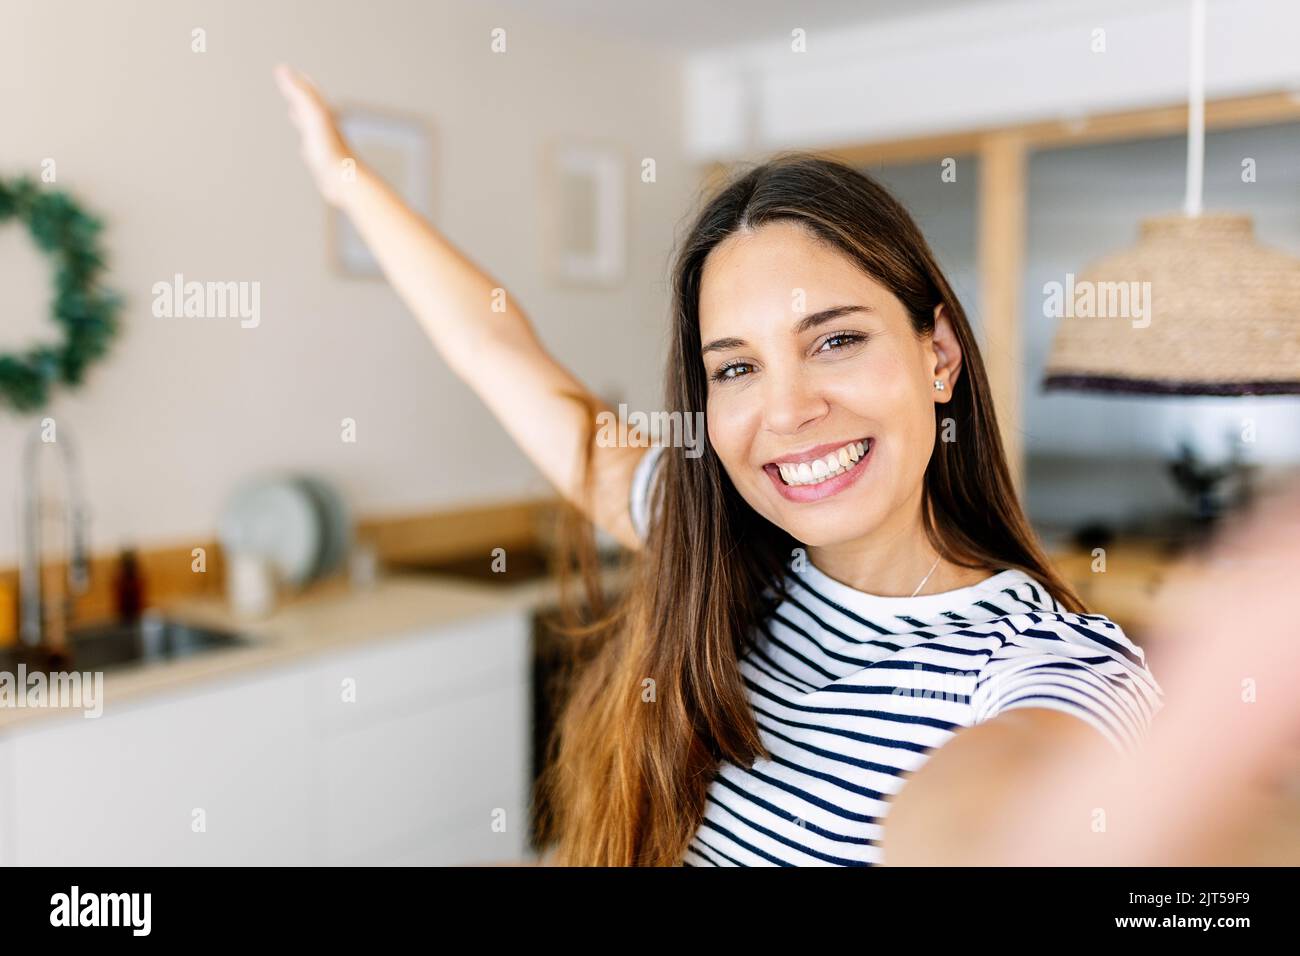 Heitere glückliche junge Erwachsene Frau, die zu Hause Selfie-Porträt mit dem Telefon macht Stockfoto